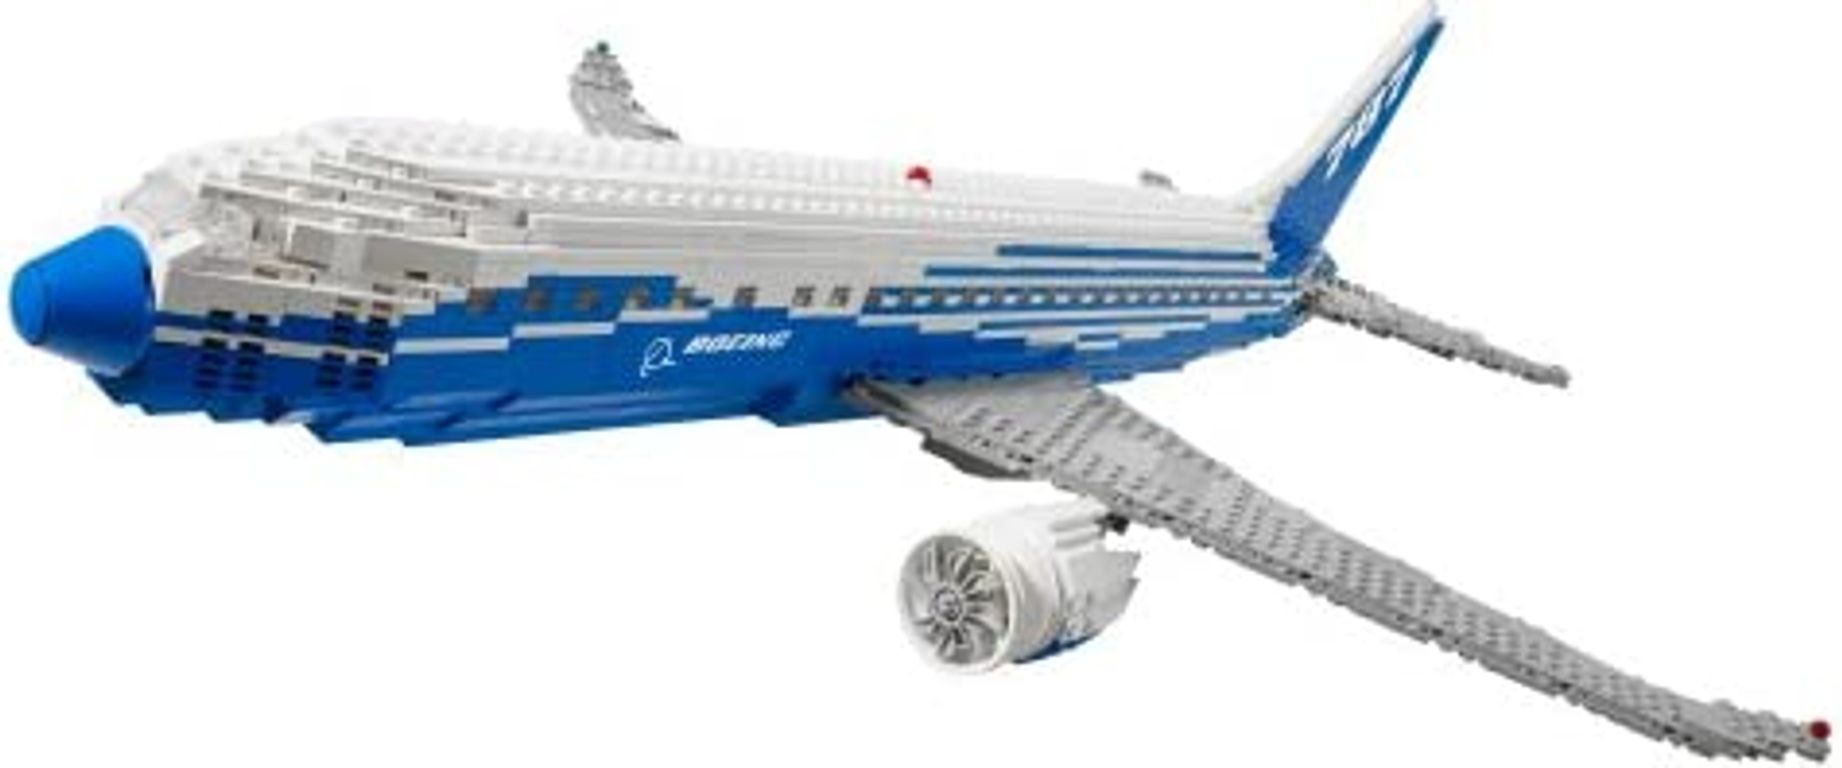 Boeing 787 Dreamliner partes